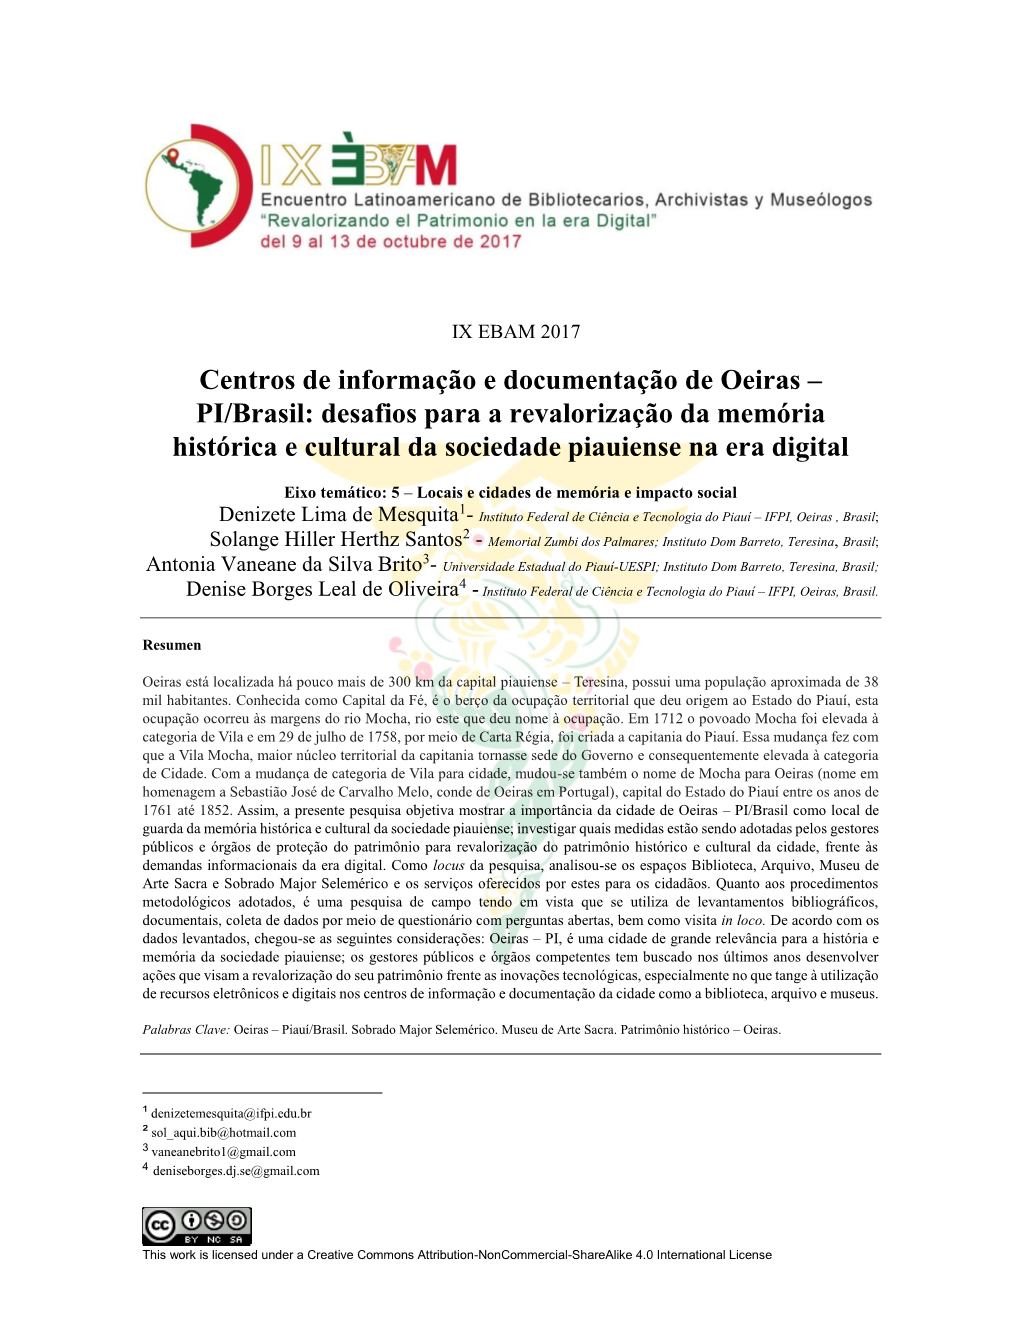 Centros De Informação E Documentação De Oeiras – PI/Brasil: Desafios Para a Revalorização Da Memória Histórica E Cultural Da Sociedade Piauiense Na Era Digital